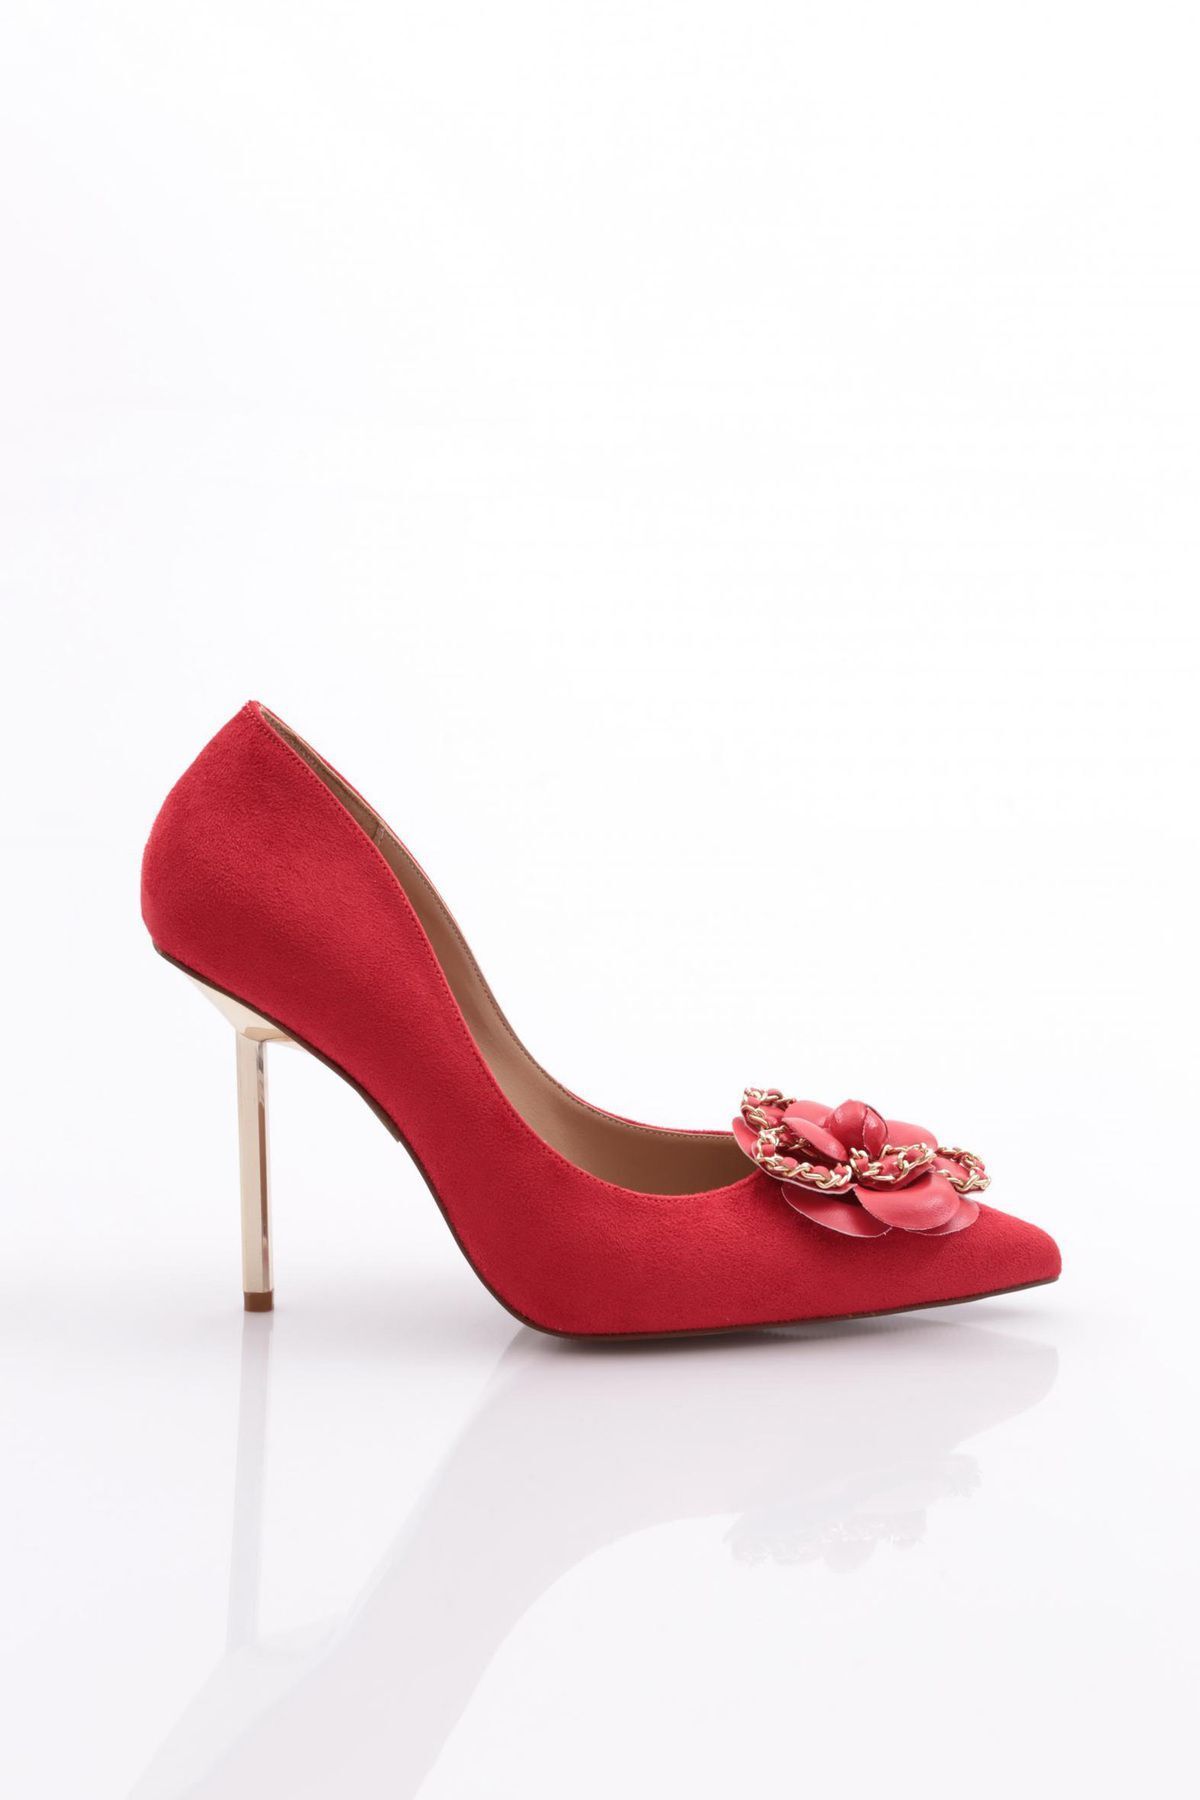 Dgn 4541 Kadın Topuklu Ayakkabı Kırmızı Dana